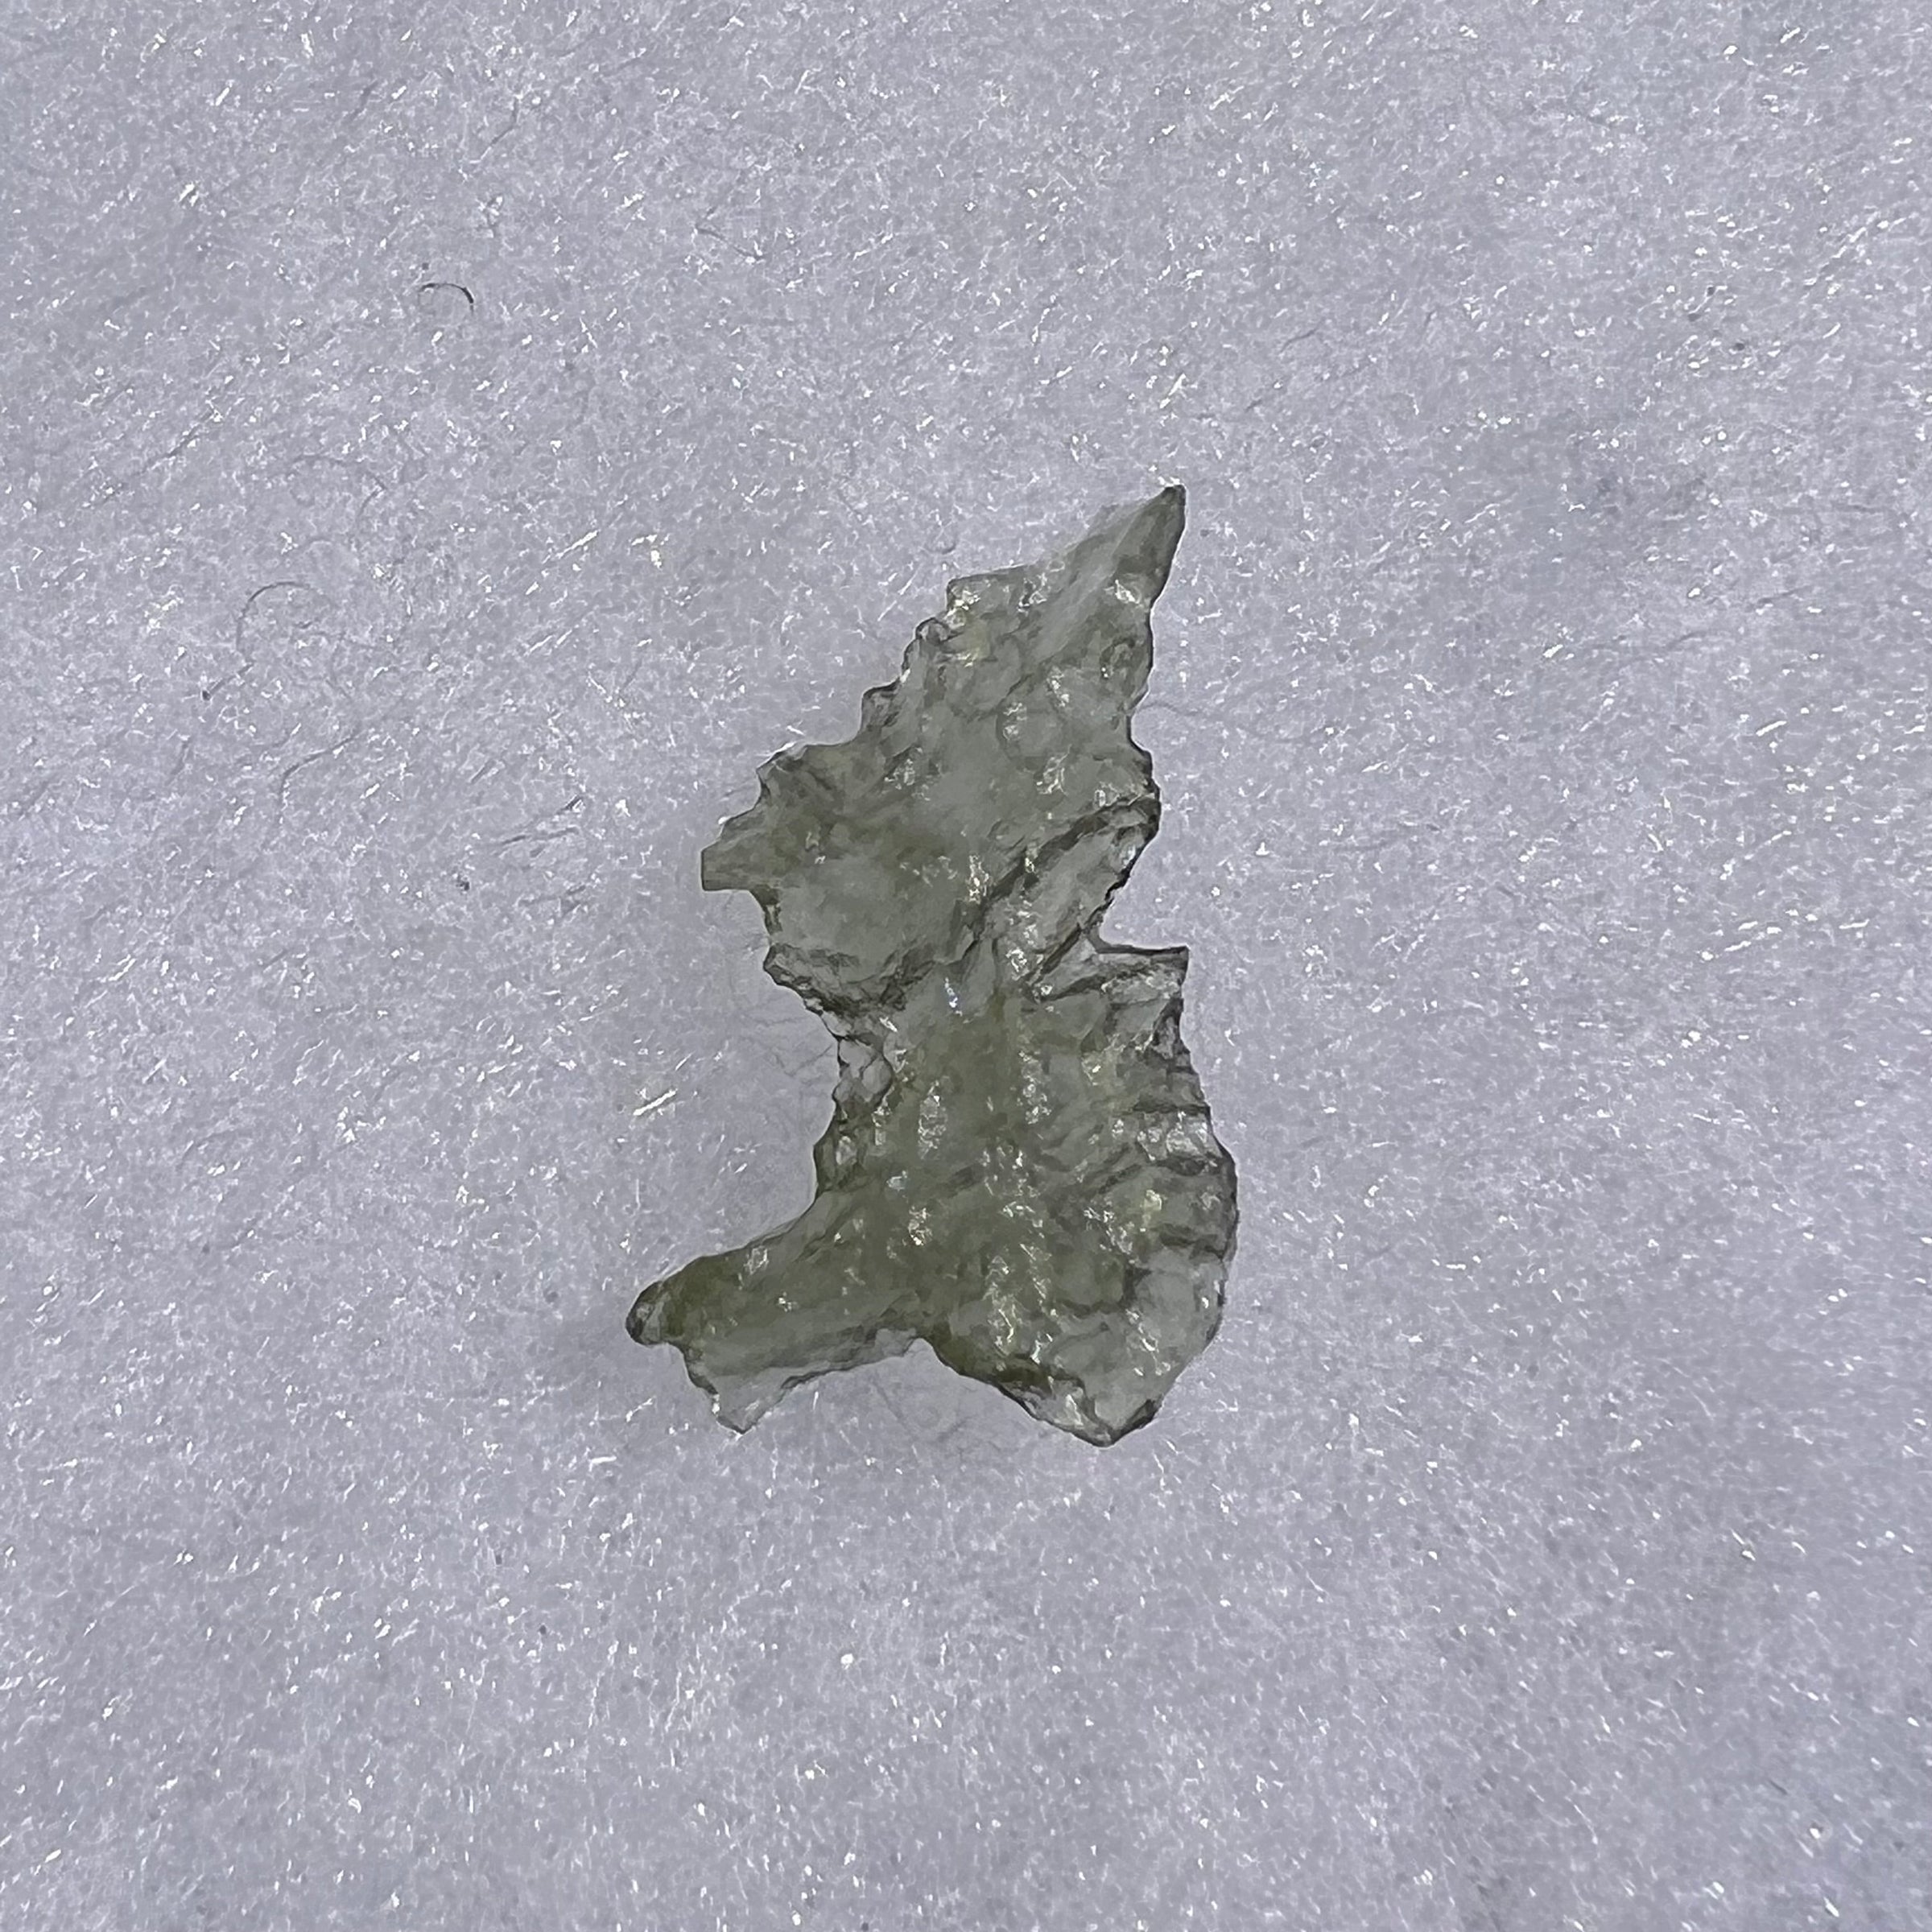 Besednice Moldavite 0.68 grams #487-Moldavite Life